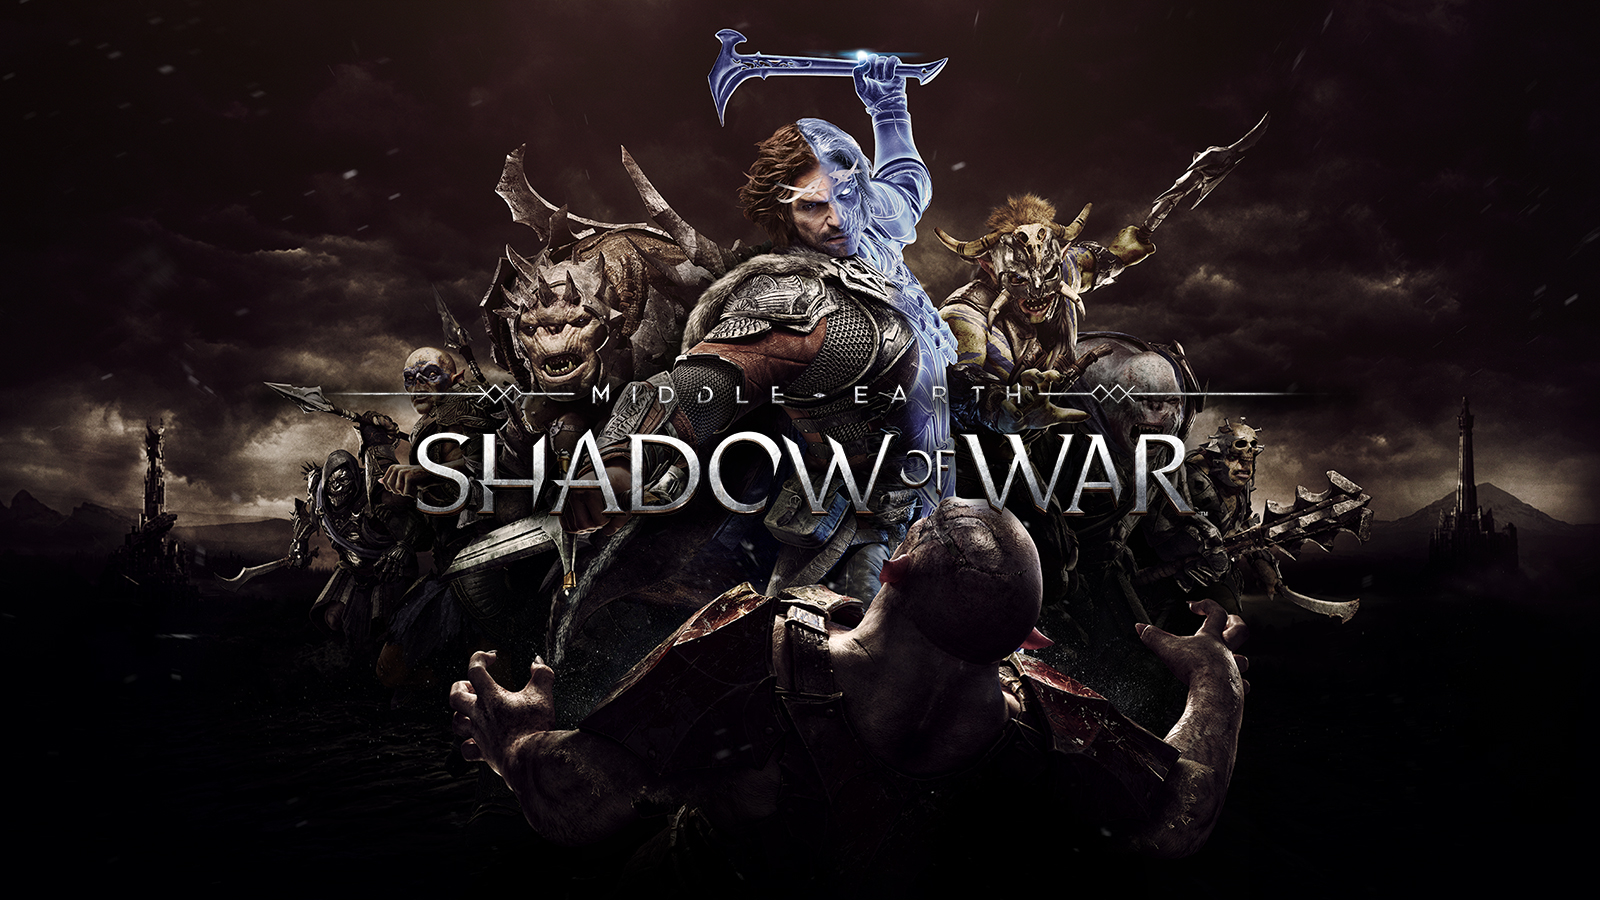 Middle-earth: Shadow of War Trophy Guide & Roadmap